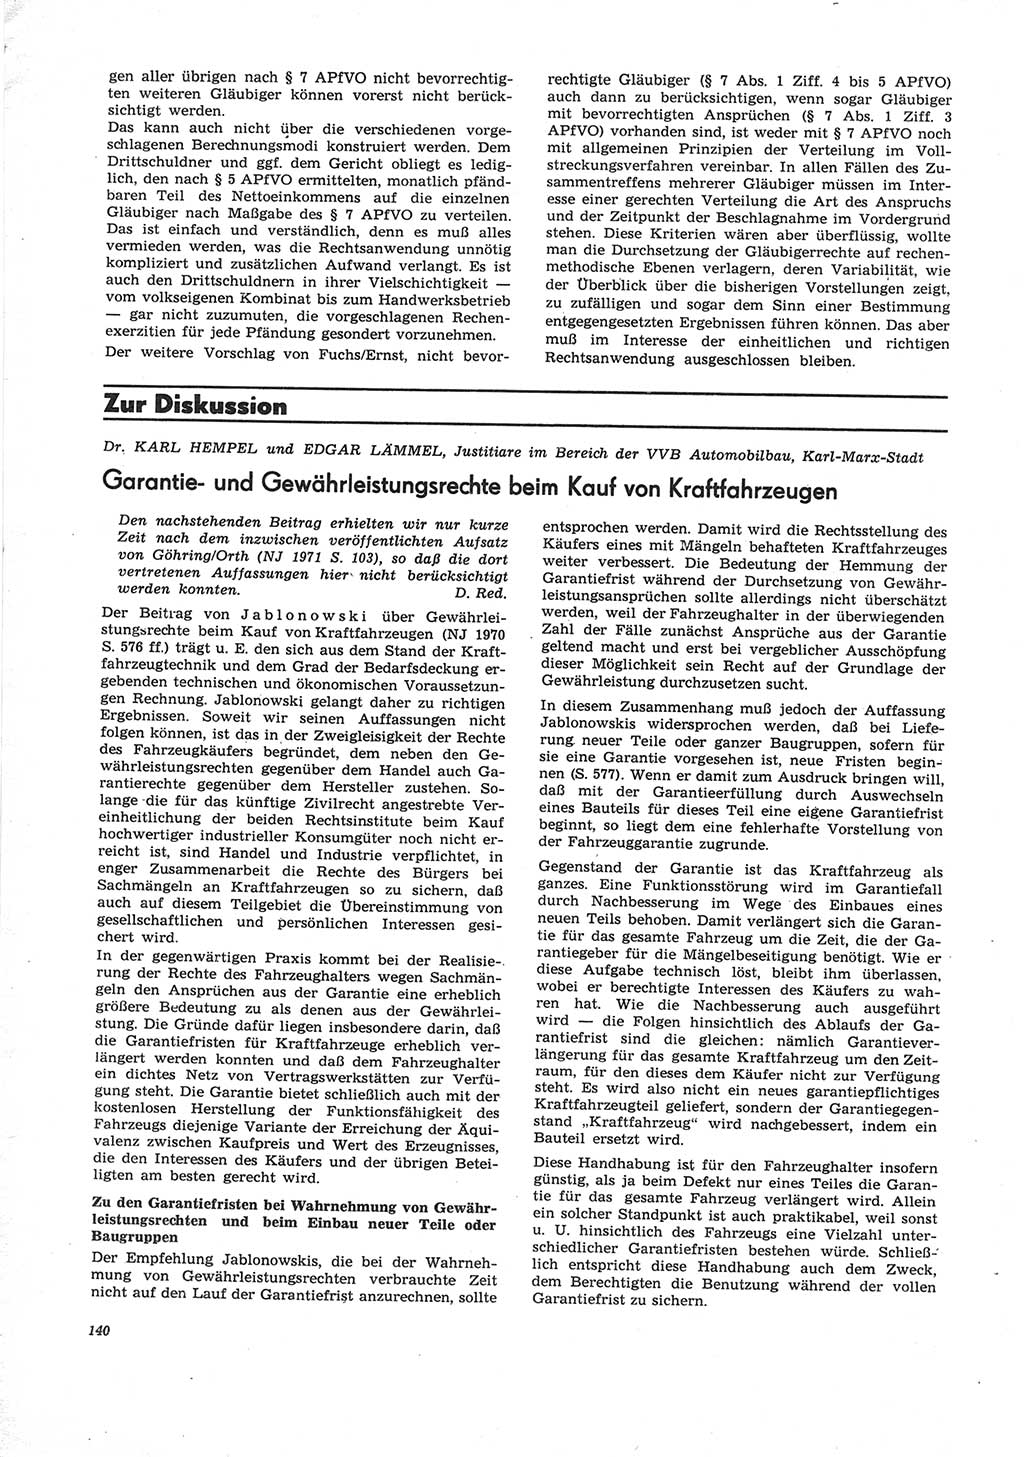 Neue Justiz (NJ), Zeitschrift für Recht und Rechtswissenschaft [Deutsche Demokratische Republik (DDR)], 25. Jahrgang 1971, Seite 140 (NJ DDR 1971, S. 140)